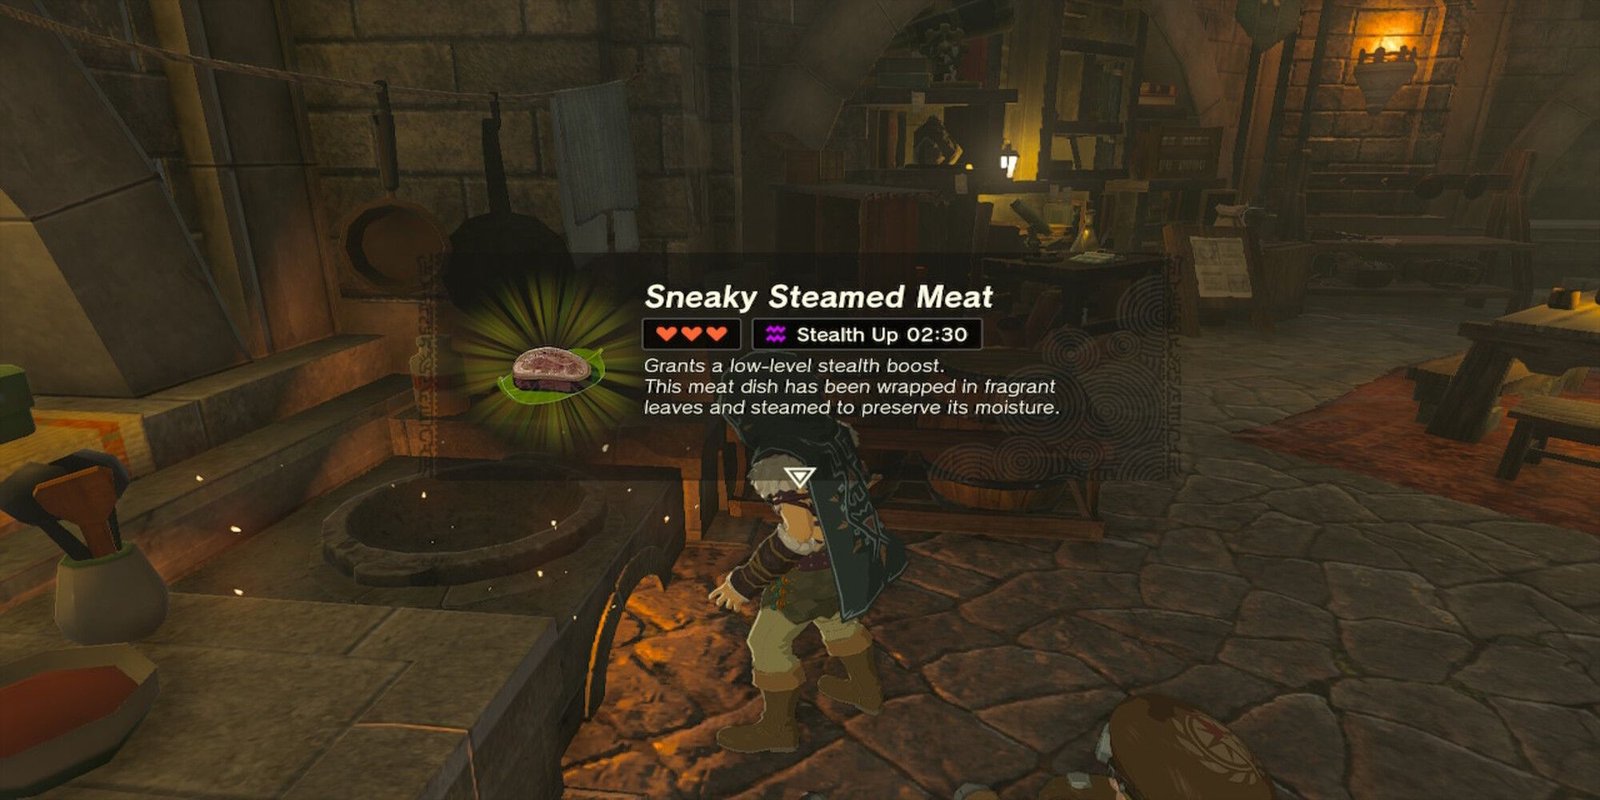 TotK - Sneaky Steamed Meat